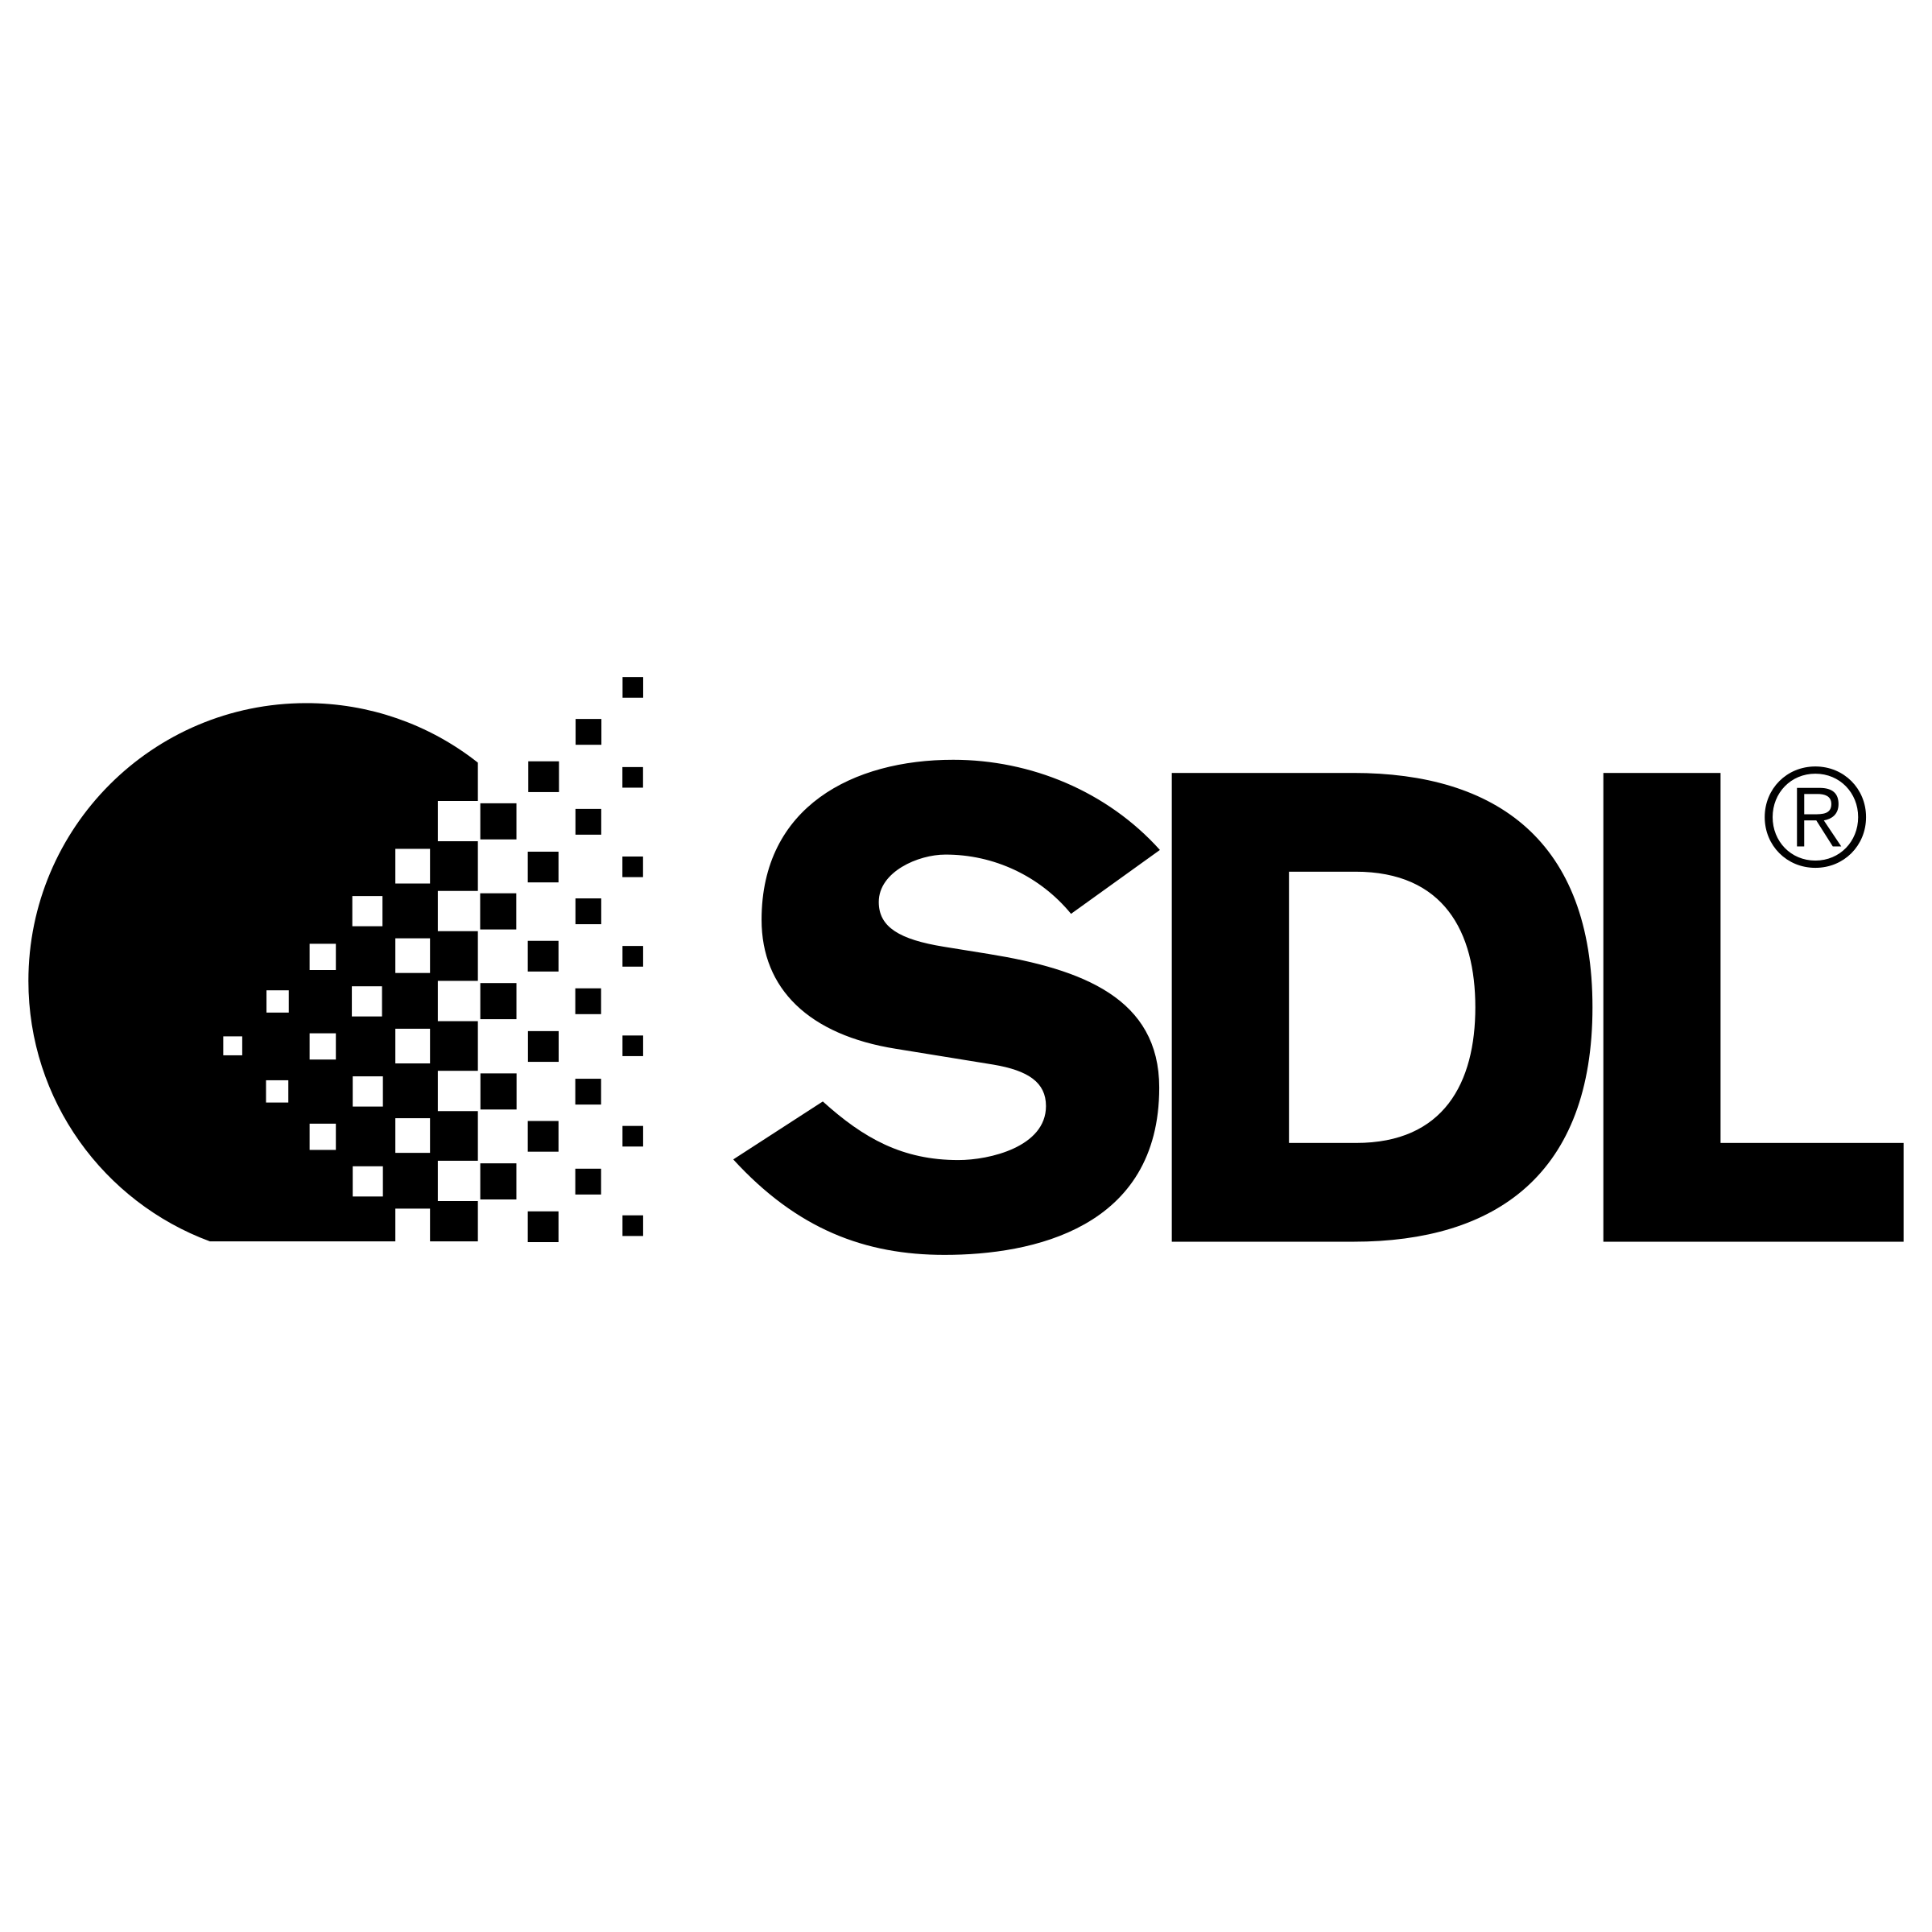 SDL Logo - SDL Logo PNG Transparent & SVG Vector - Freebie Supply